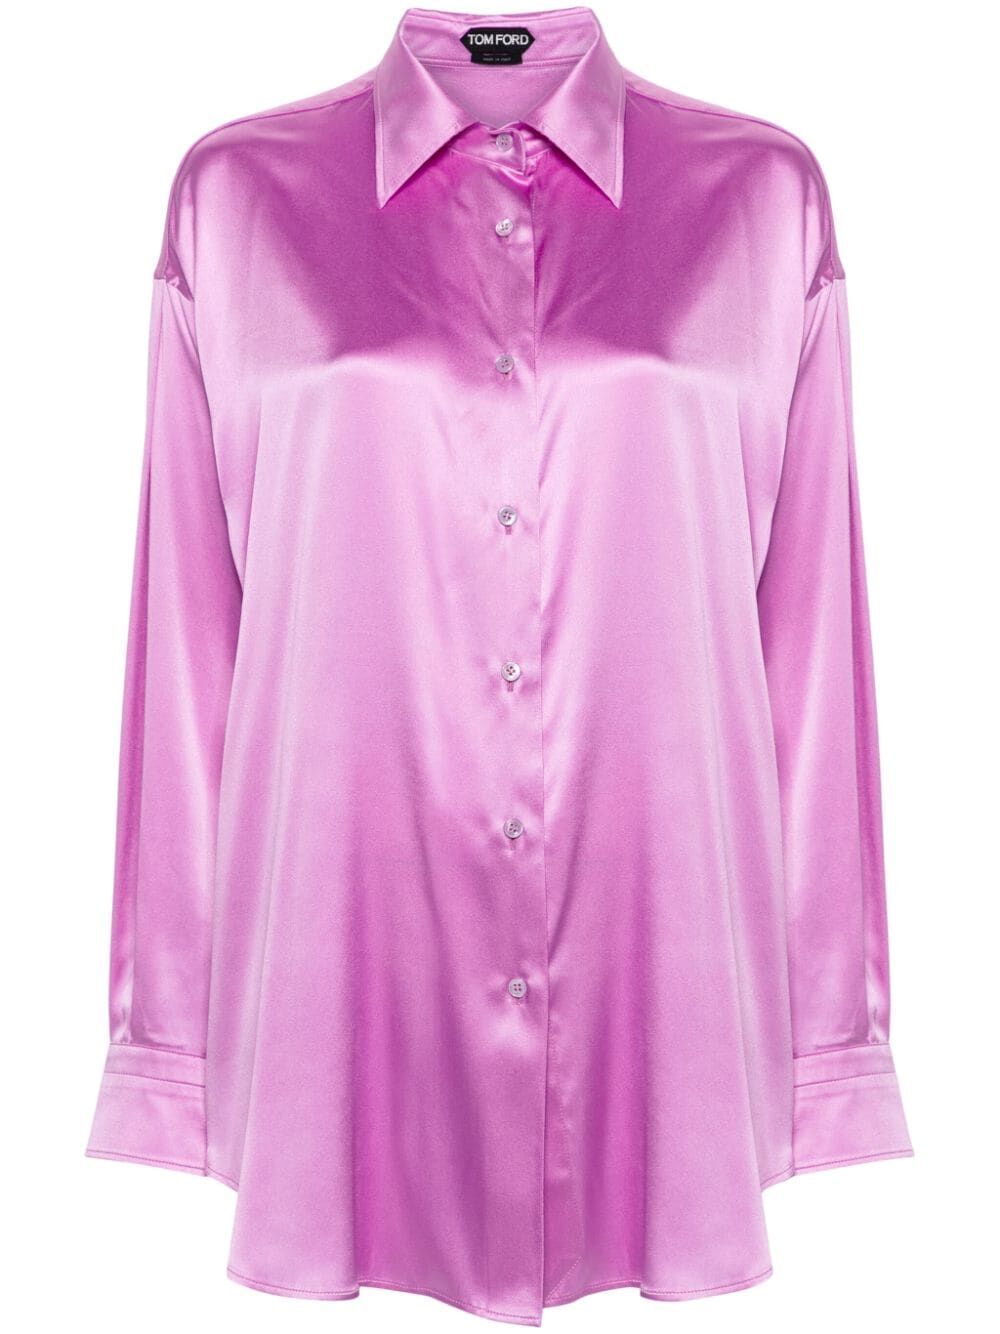 粉紫色豪華真絲女式鈕扣襯衫